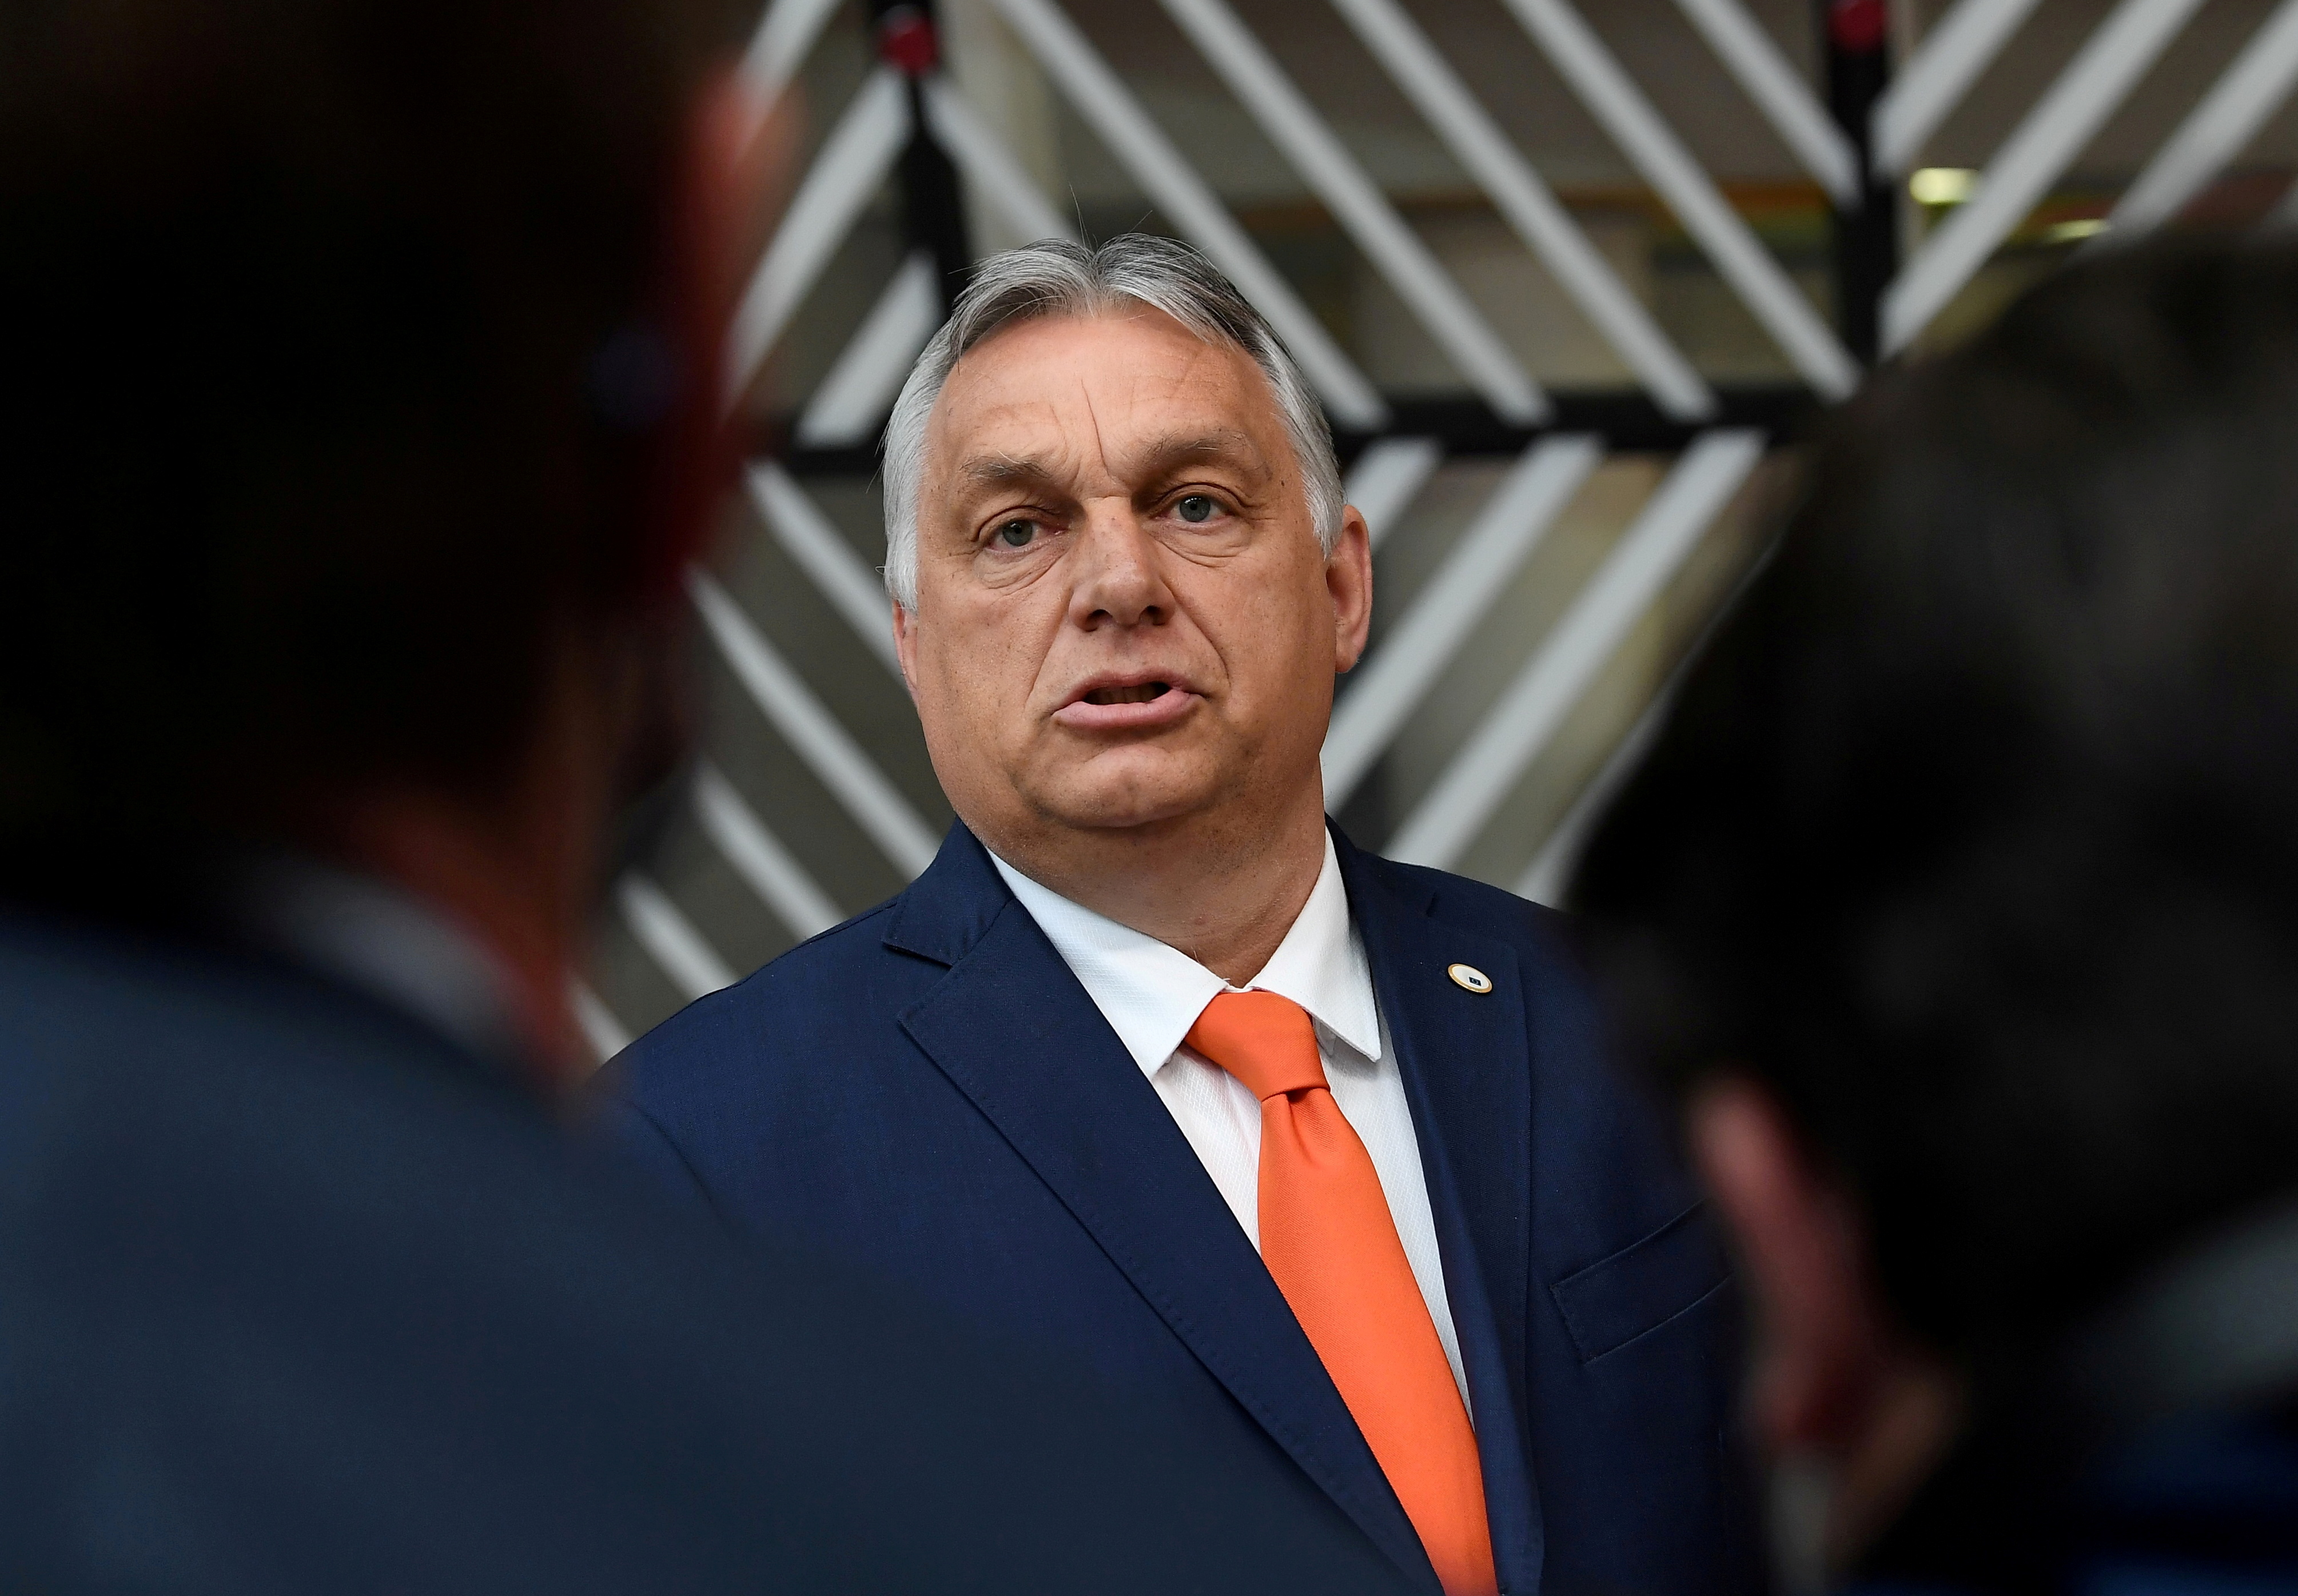 Hungary's Prime Minister Viktor Orban in Brussels